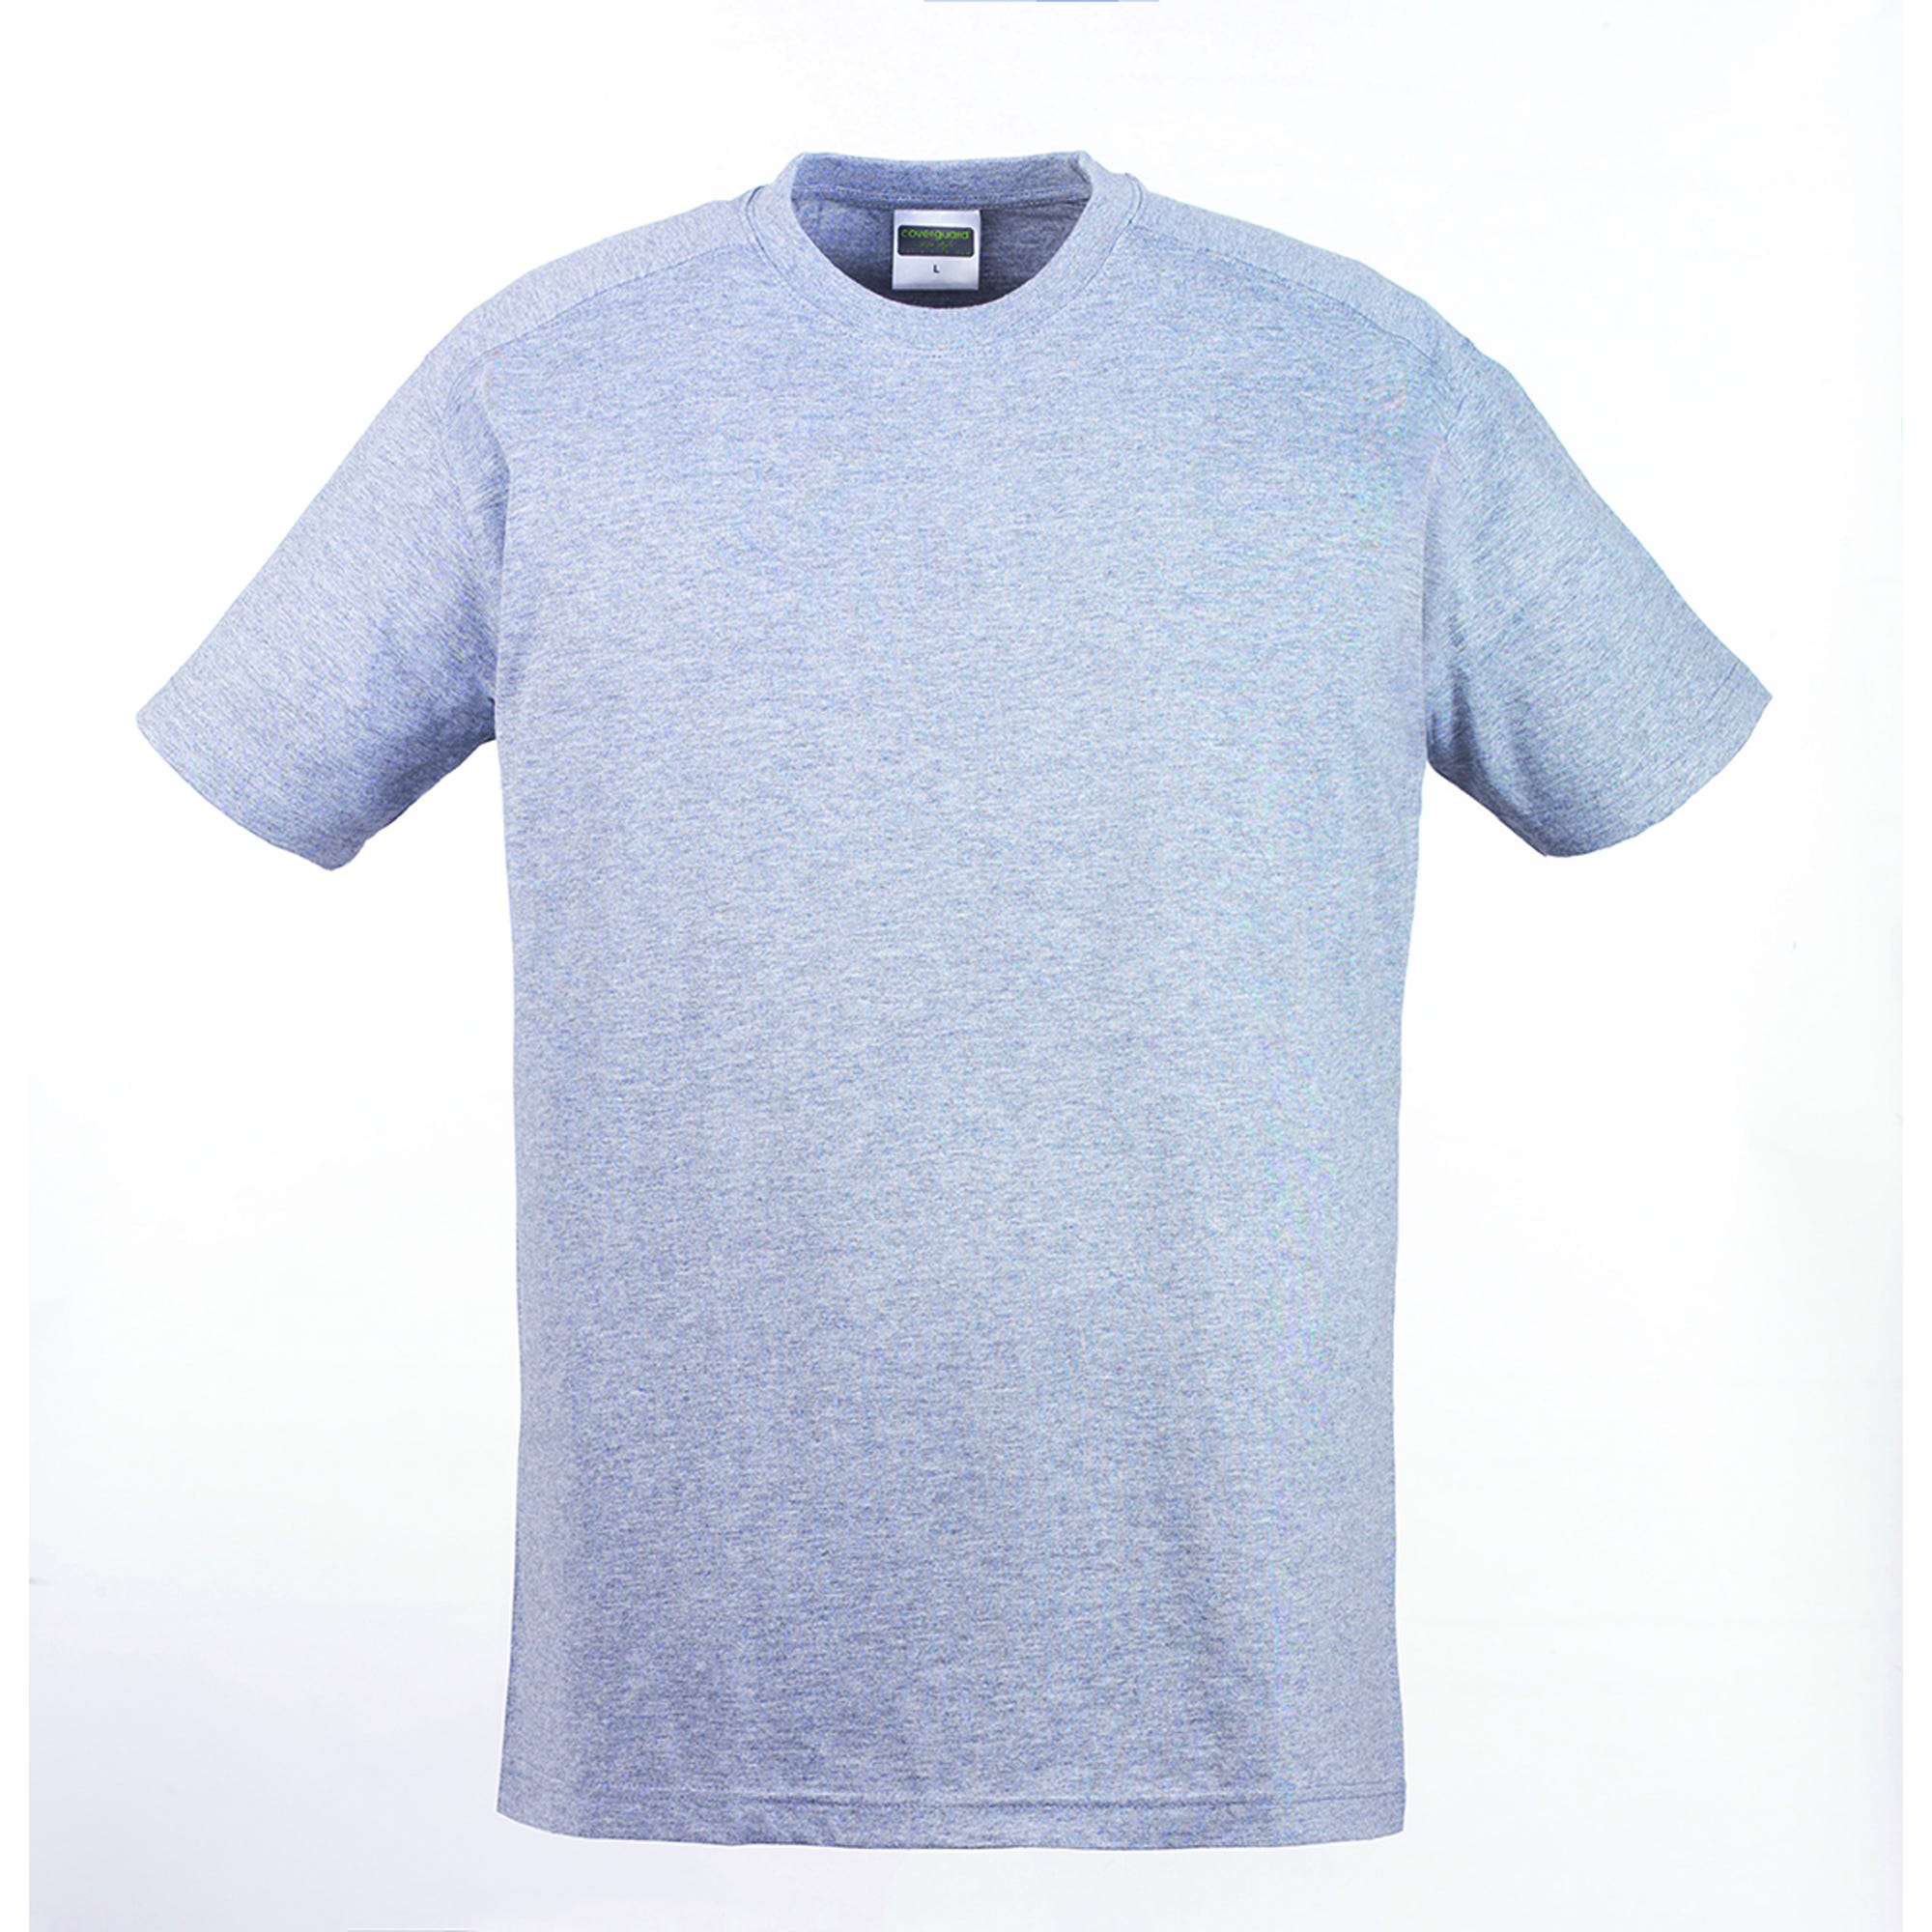 HIKE T-shirt MC gris chiné, 85% coton/15% viscose, 190g/m² - COVERGUARD - Taille XL 1